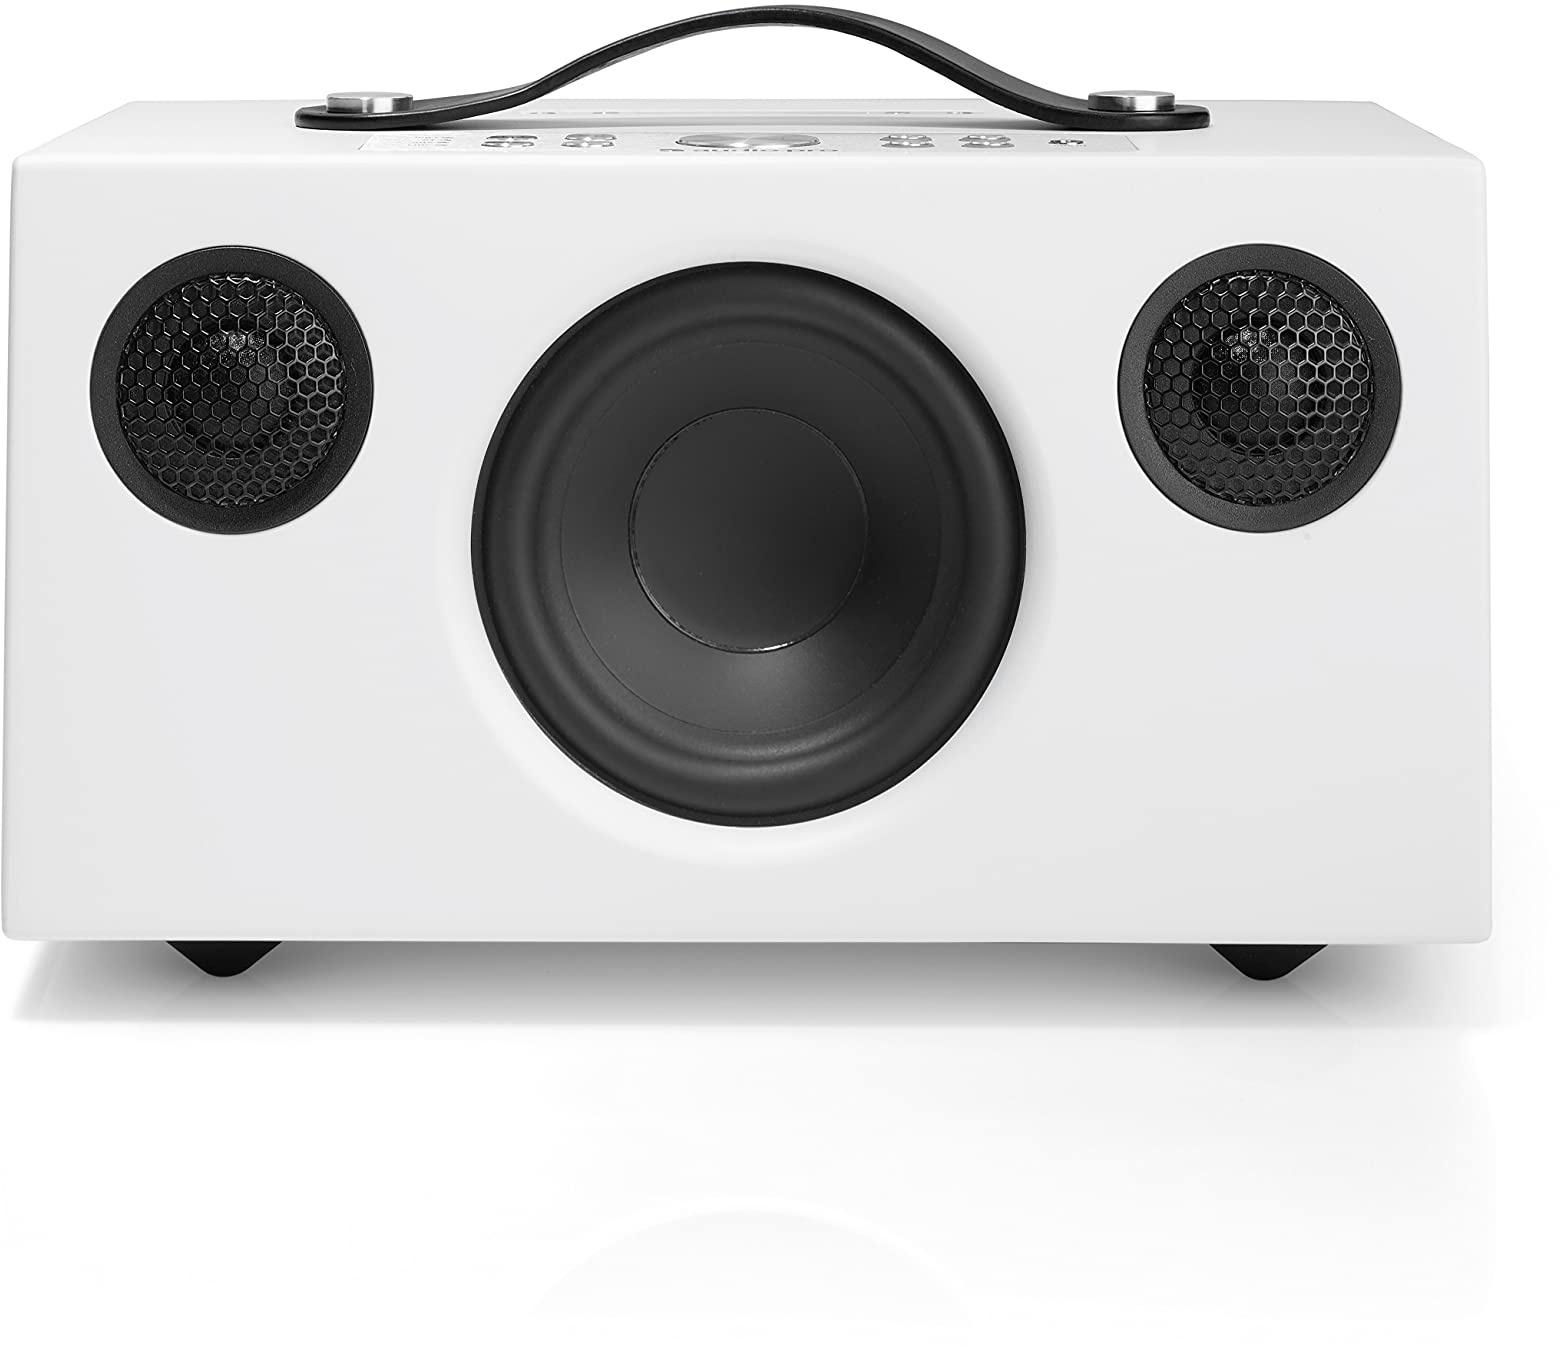 Audio Pro Addon C5A - Tragbarer Multiroom Lautsprecher mit Voice Control Amazon Alexa - Kabelloser Smart Speaker mit App - Bluetooth & WiFi Verbindung - Weiss